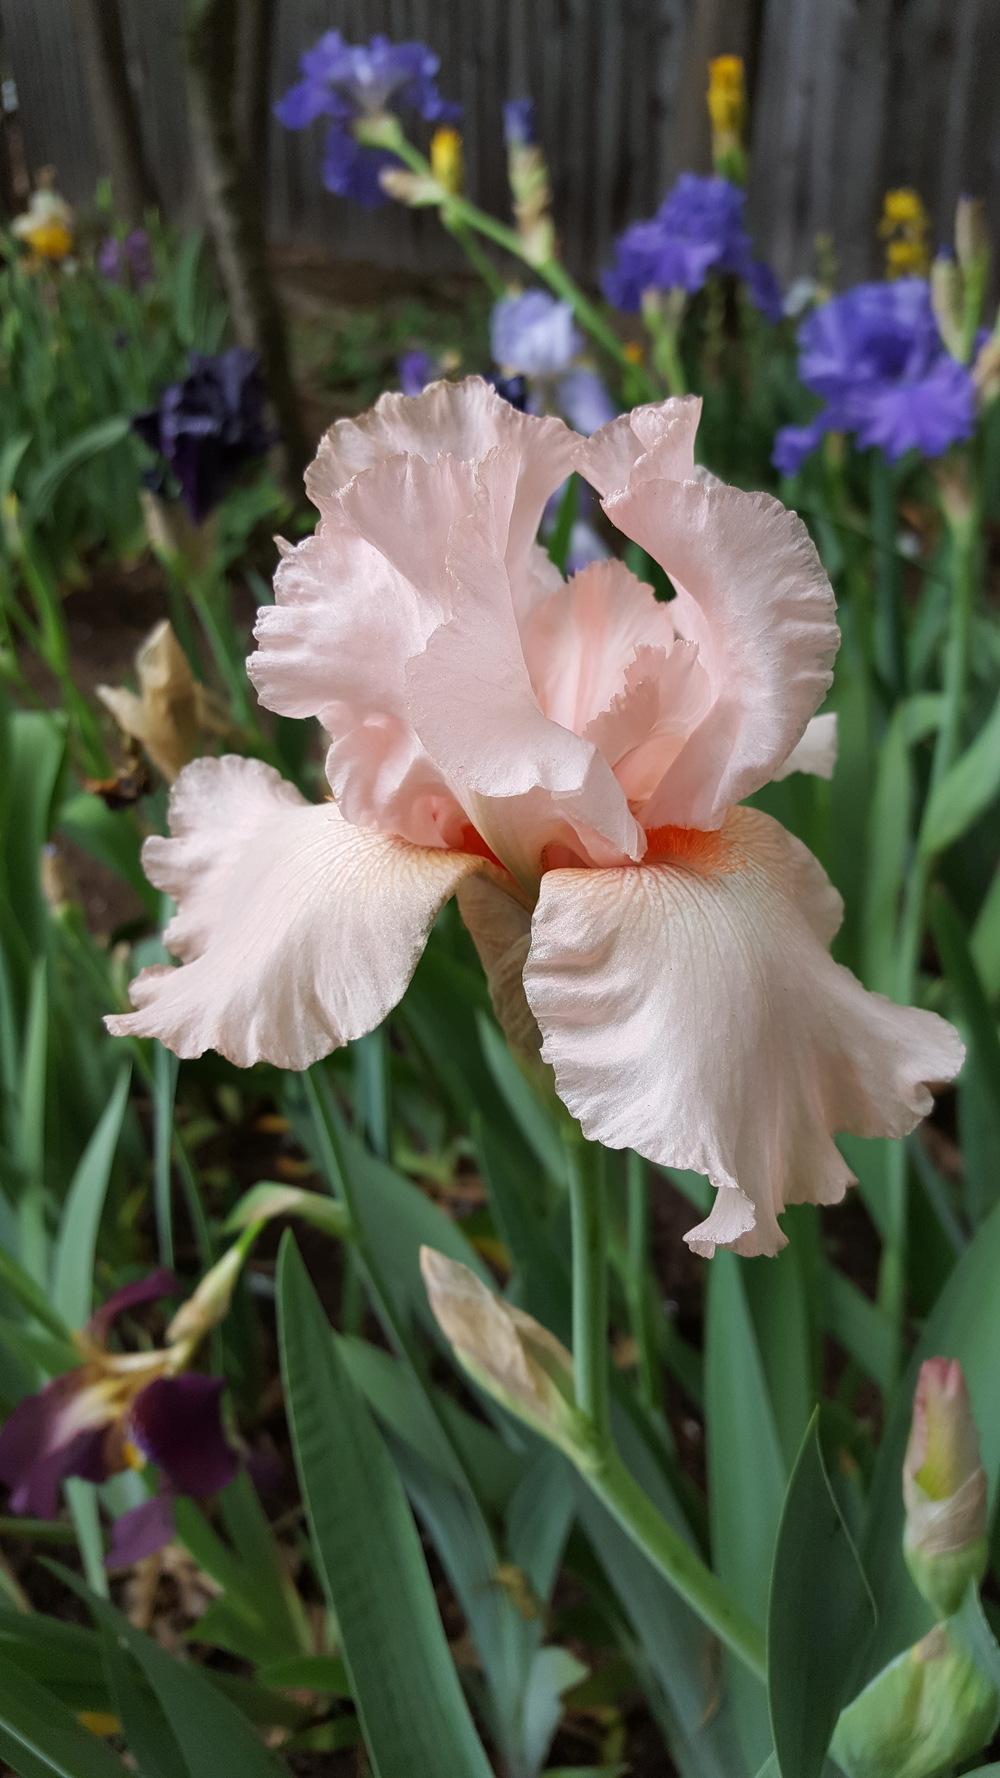 Photo of Tall Bearded Iris (Iris 'Blushing Kiss') uploaded by Dachsylady86